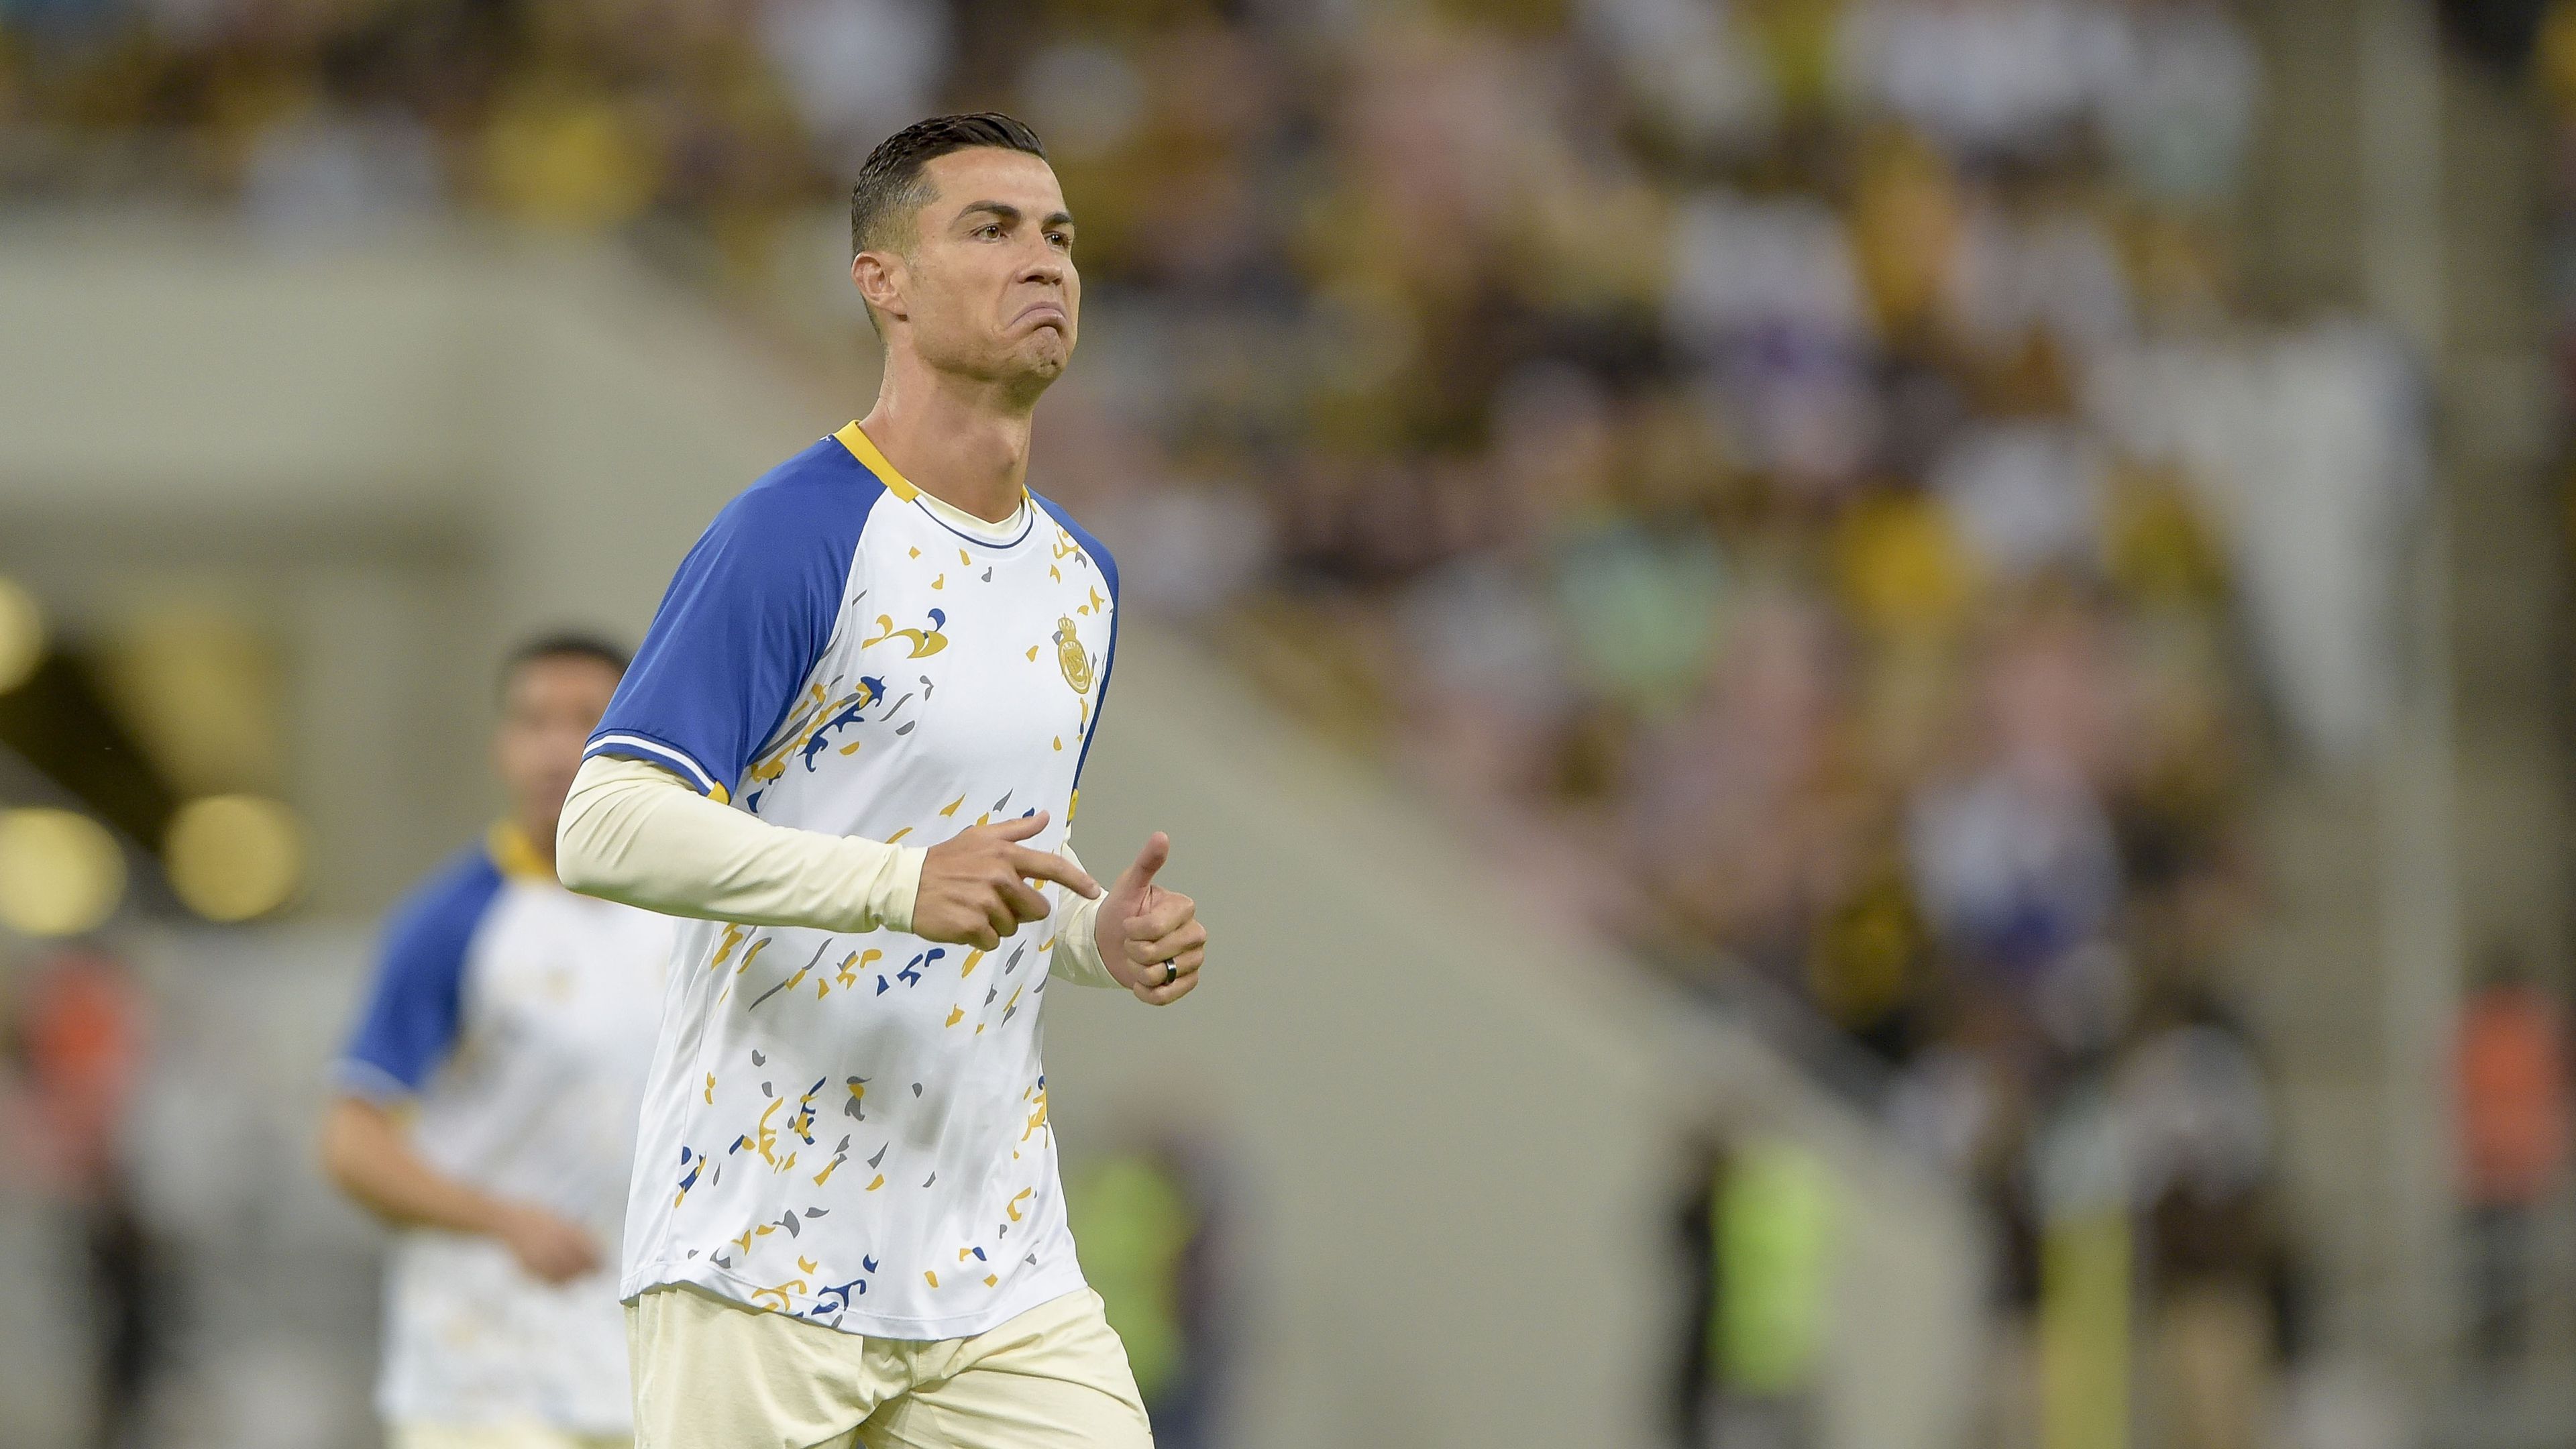 Ronaldo miatt kell távoznia az edzőnek; a halálosan megfenyegetett Gazdag nem ijedt meg – délelőtti hírösszefoglaló